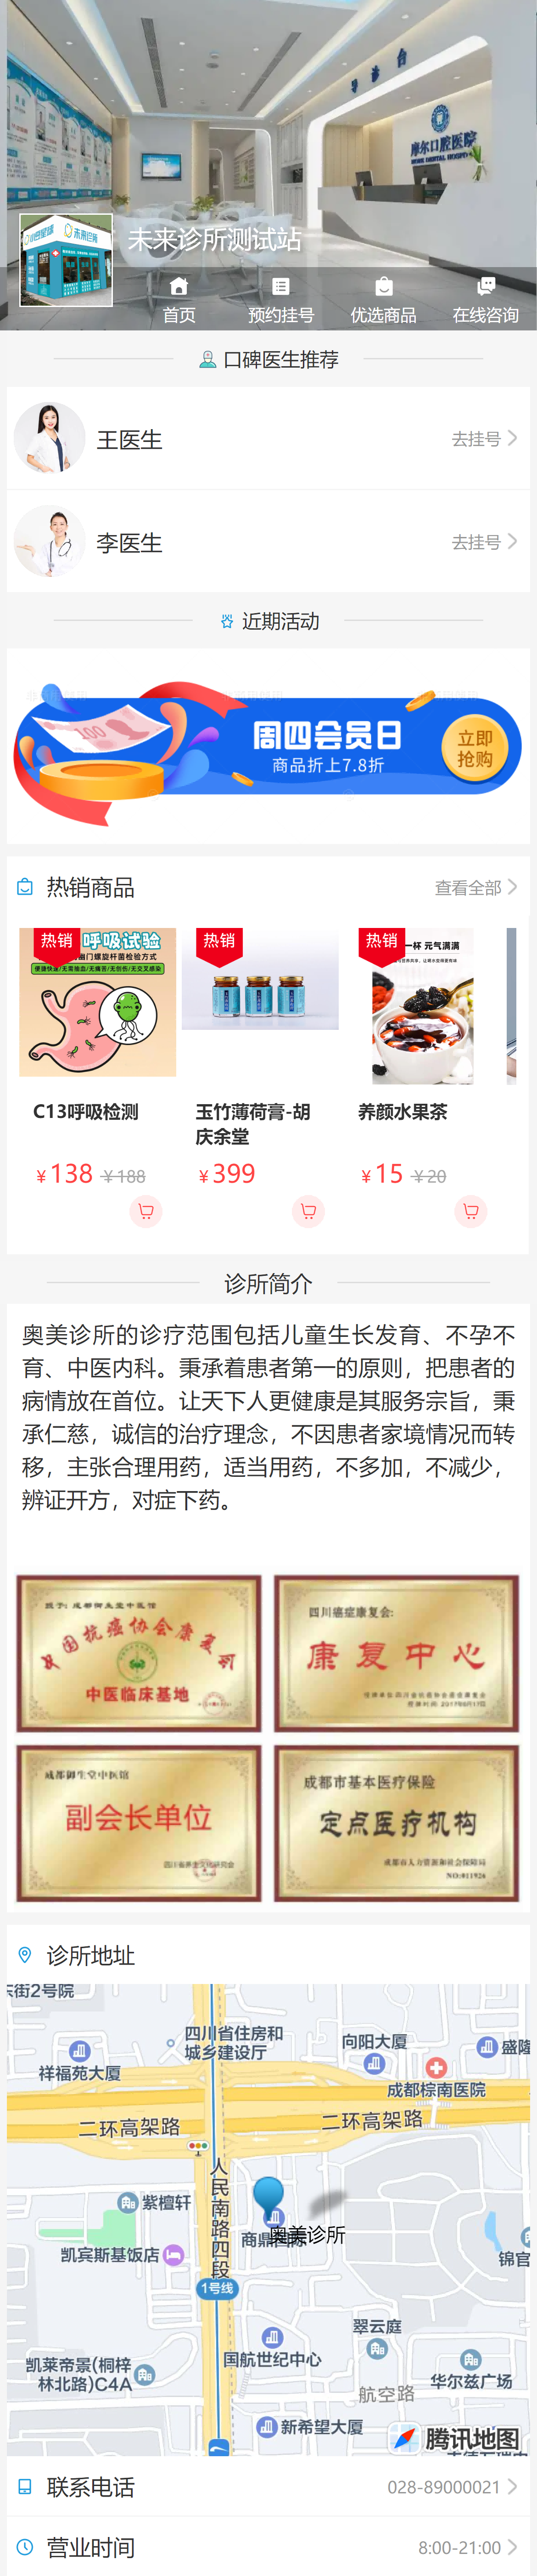 shop.yizhu101.com_h5_7.html(iPhone 12 Pro) (3)(1).png